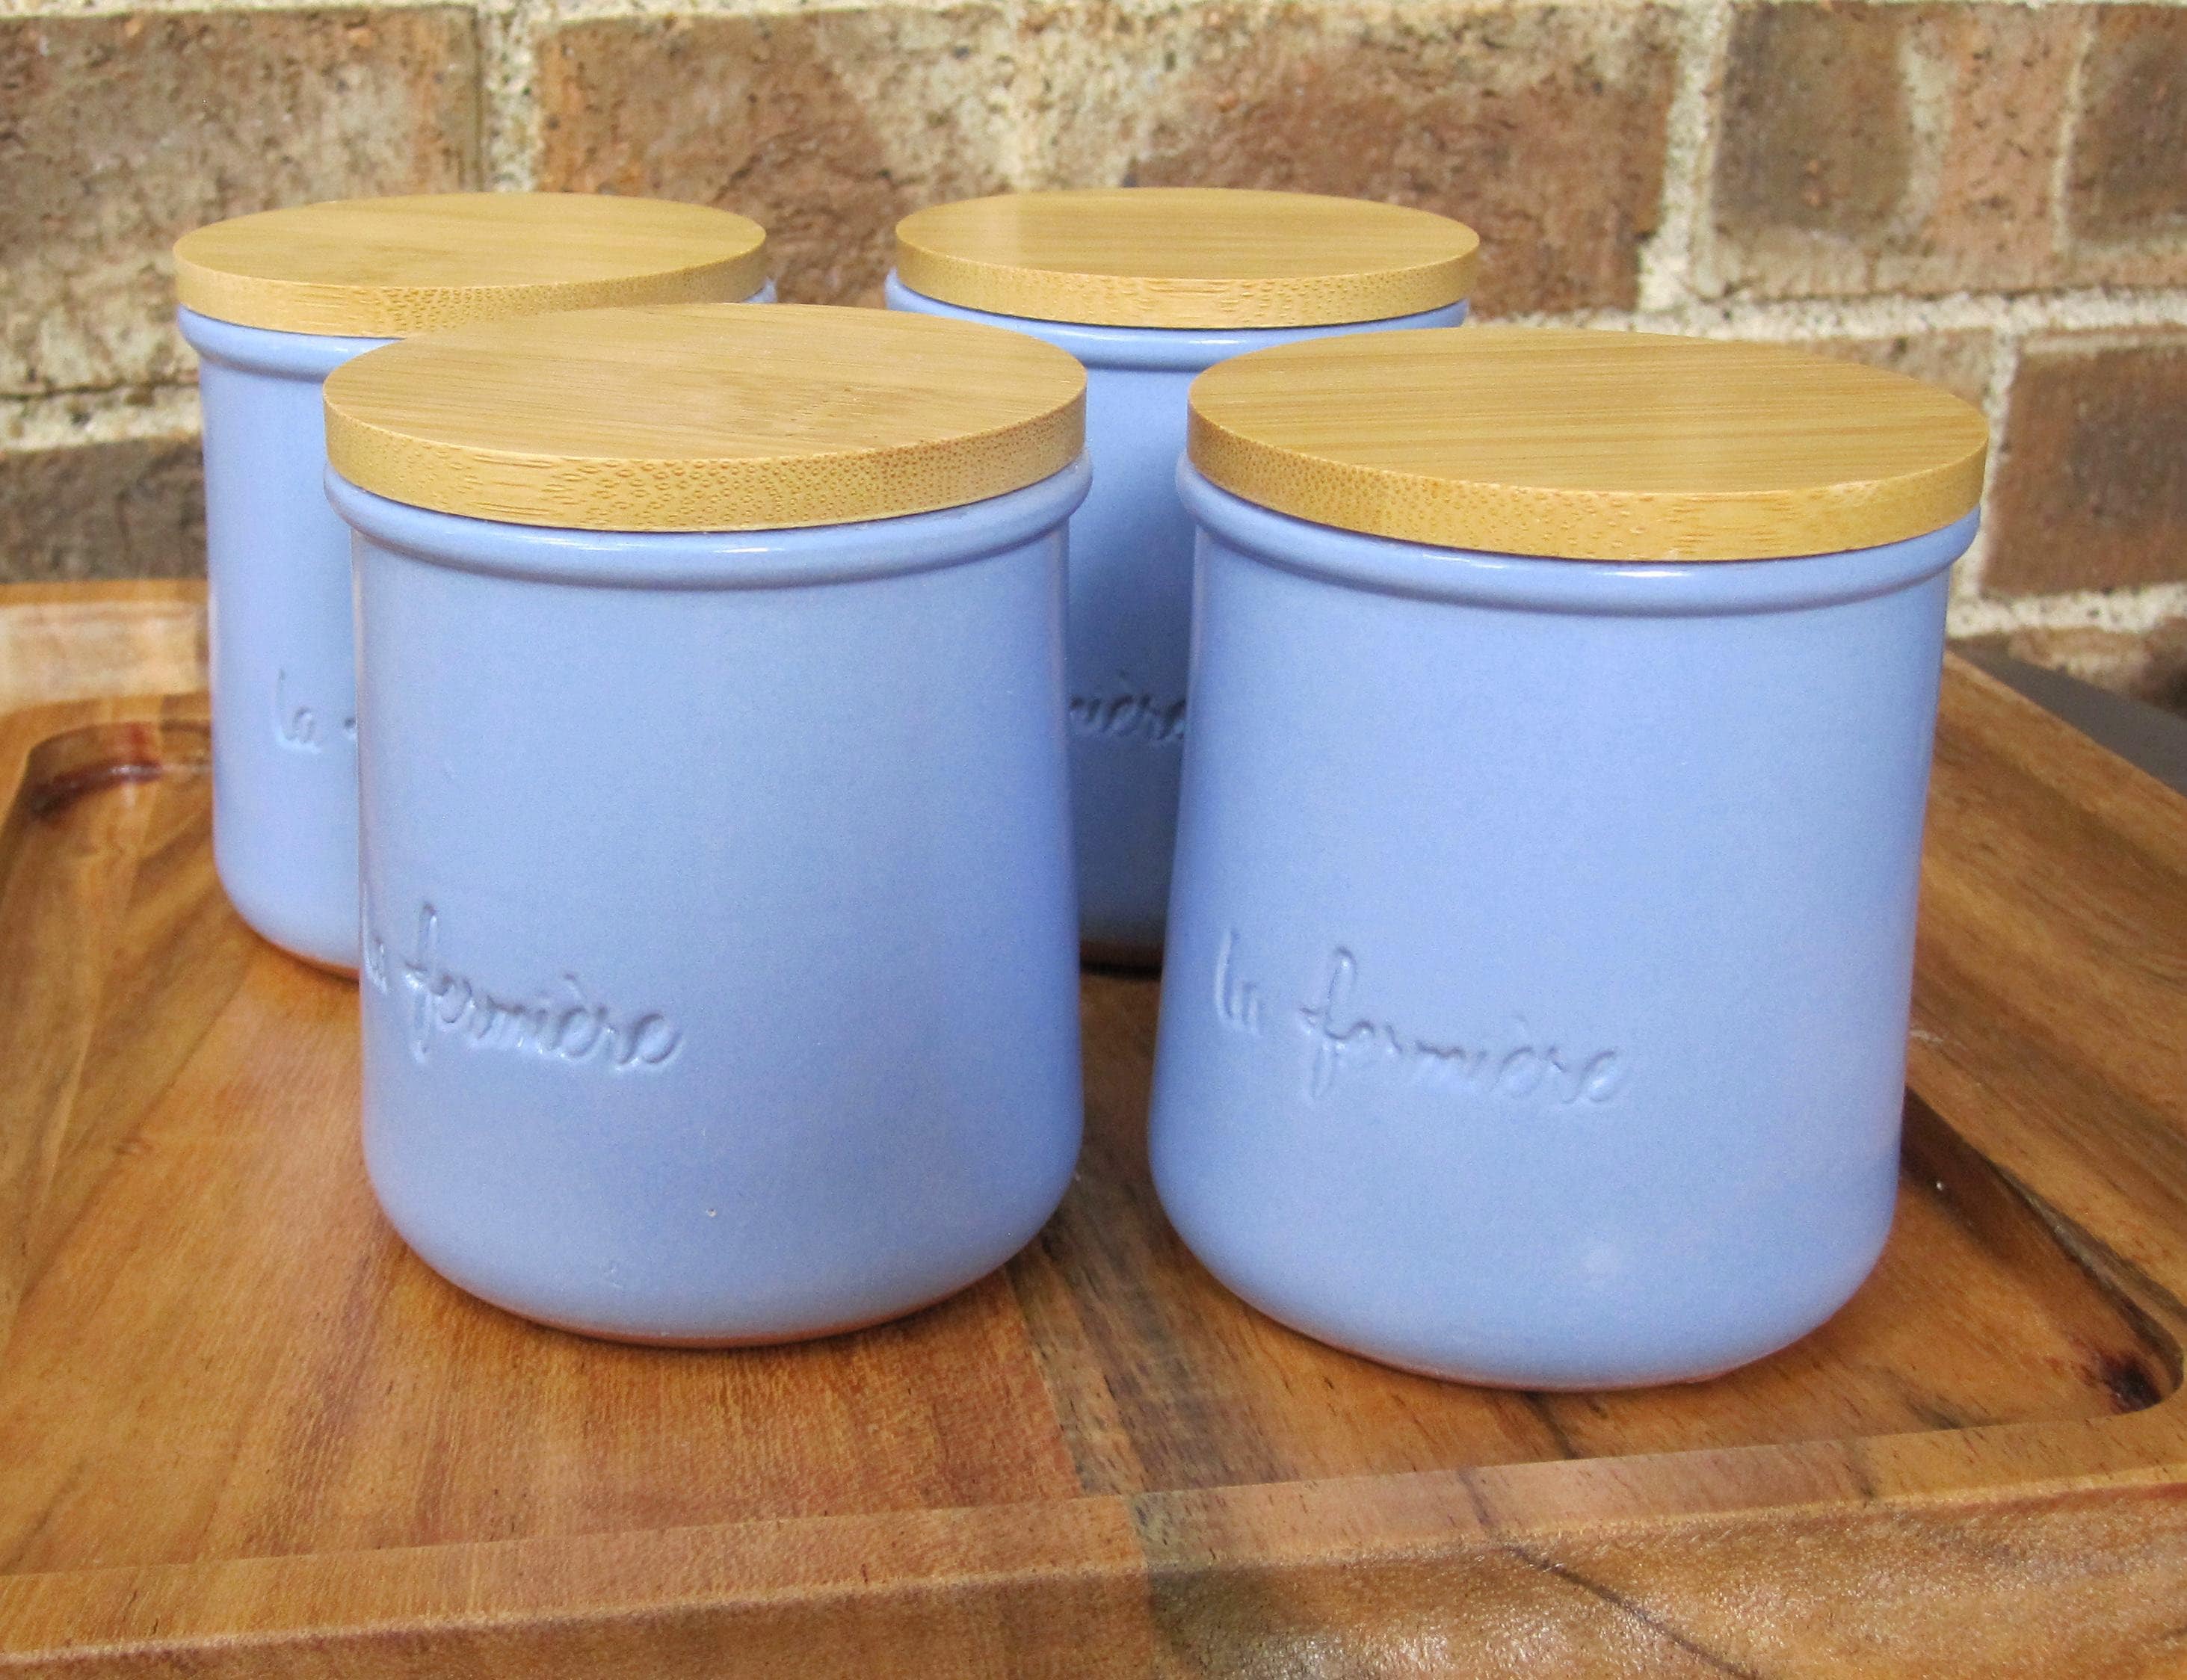 Bamboo Lids for Oui, La Fermiere Yogurt Jars - Set of 4